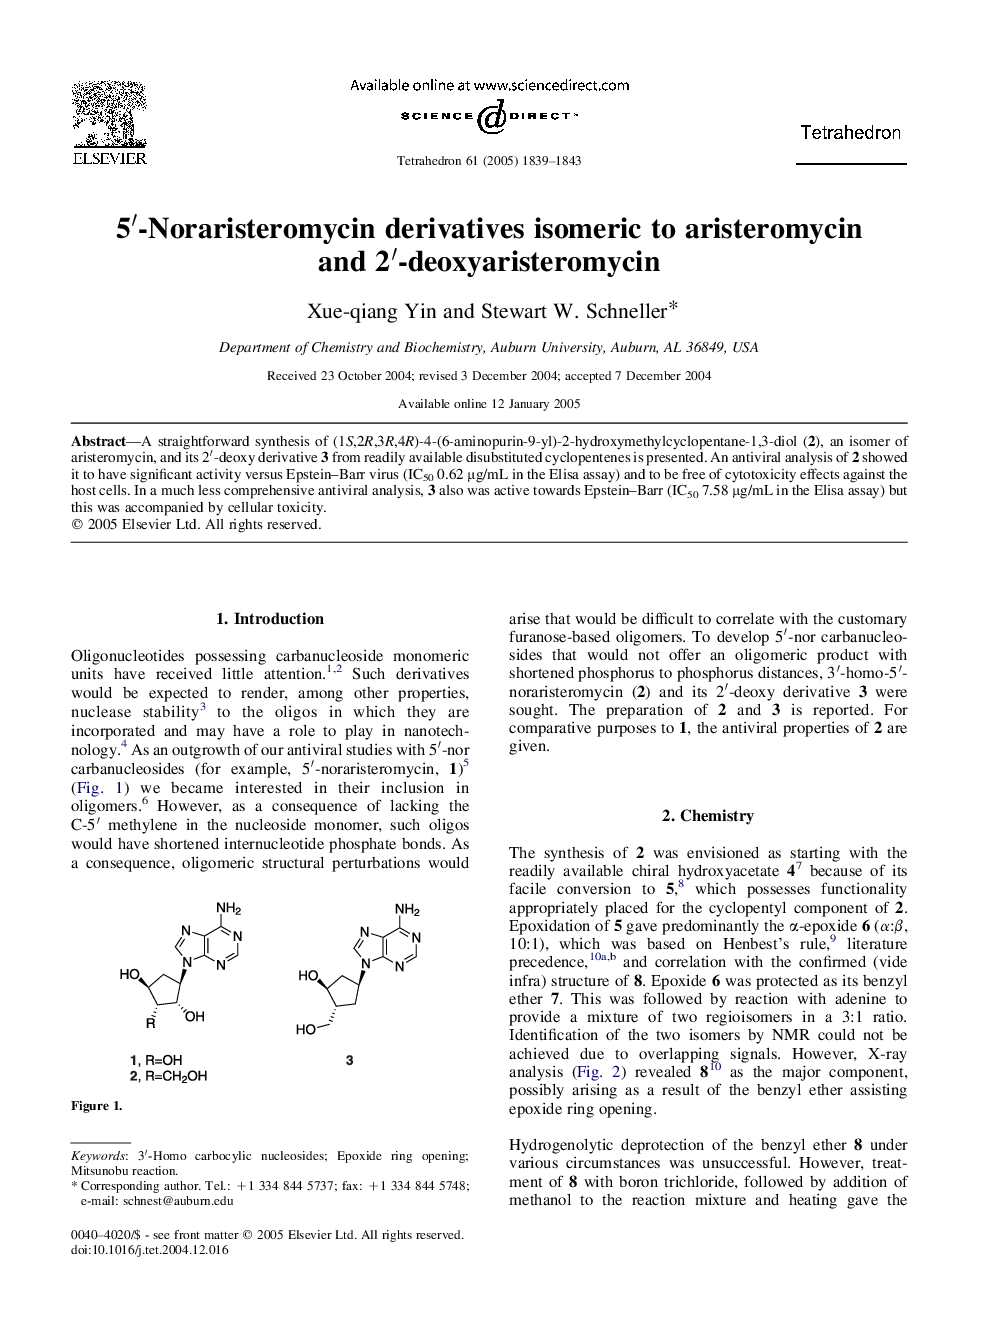 5â²-Noraristeromycin derivatives isomeric to aristeromycin and 2â²-deoxyaristeromycin